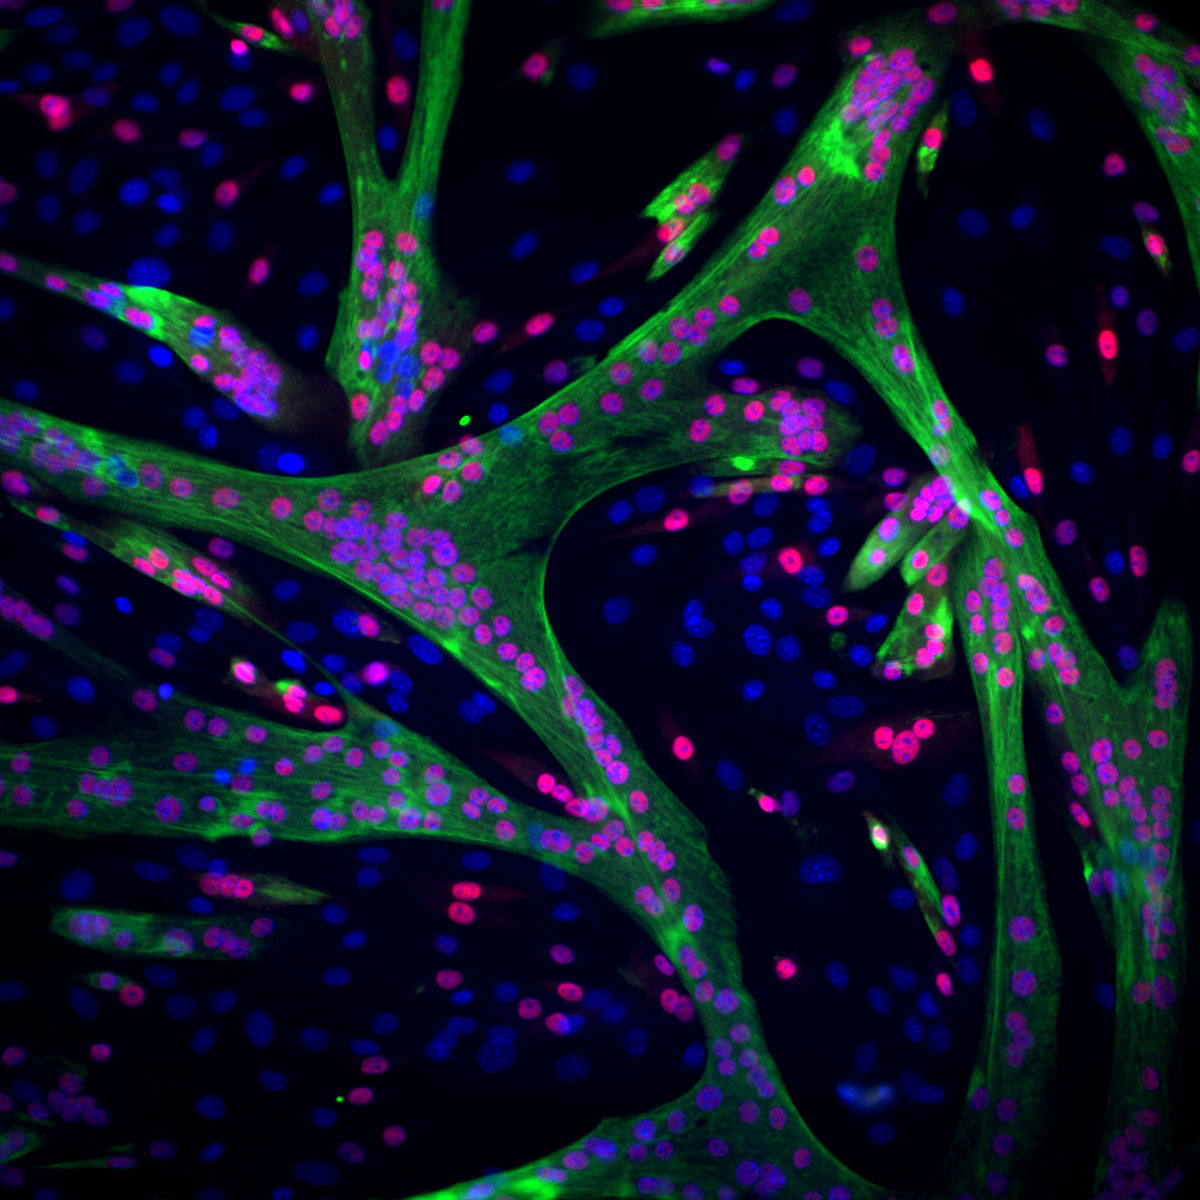 La construction des muscles : Les cellules souches musculaires (dont les noyaux sont marqués en bleu) modifient progressivement leur structure et leur fonction pour devenir des cellules musculaires adultes (dont les noyaux deviennent rouges). 